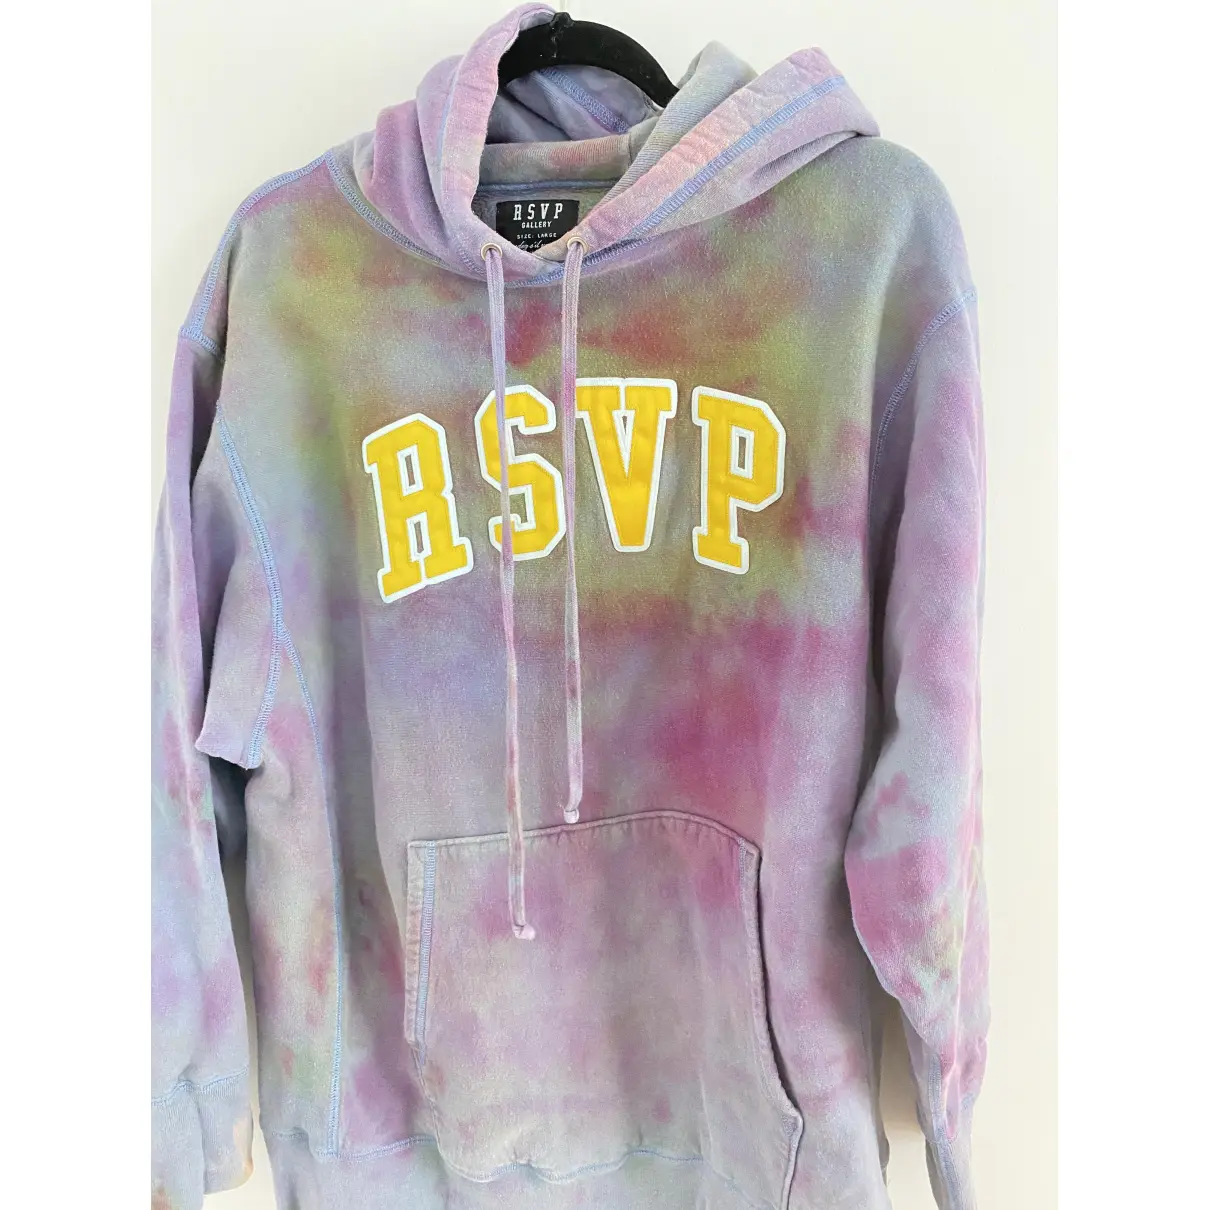 Buy RSVP Sweatshirt online